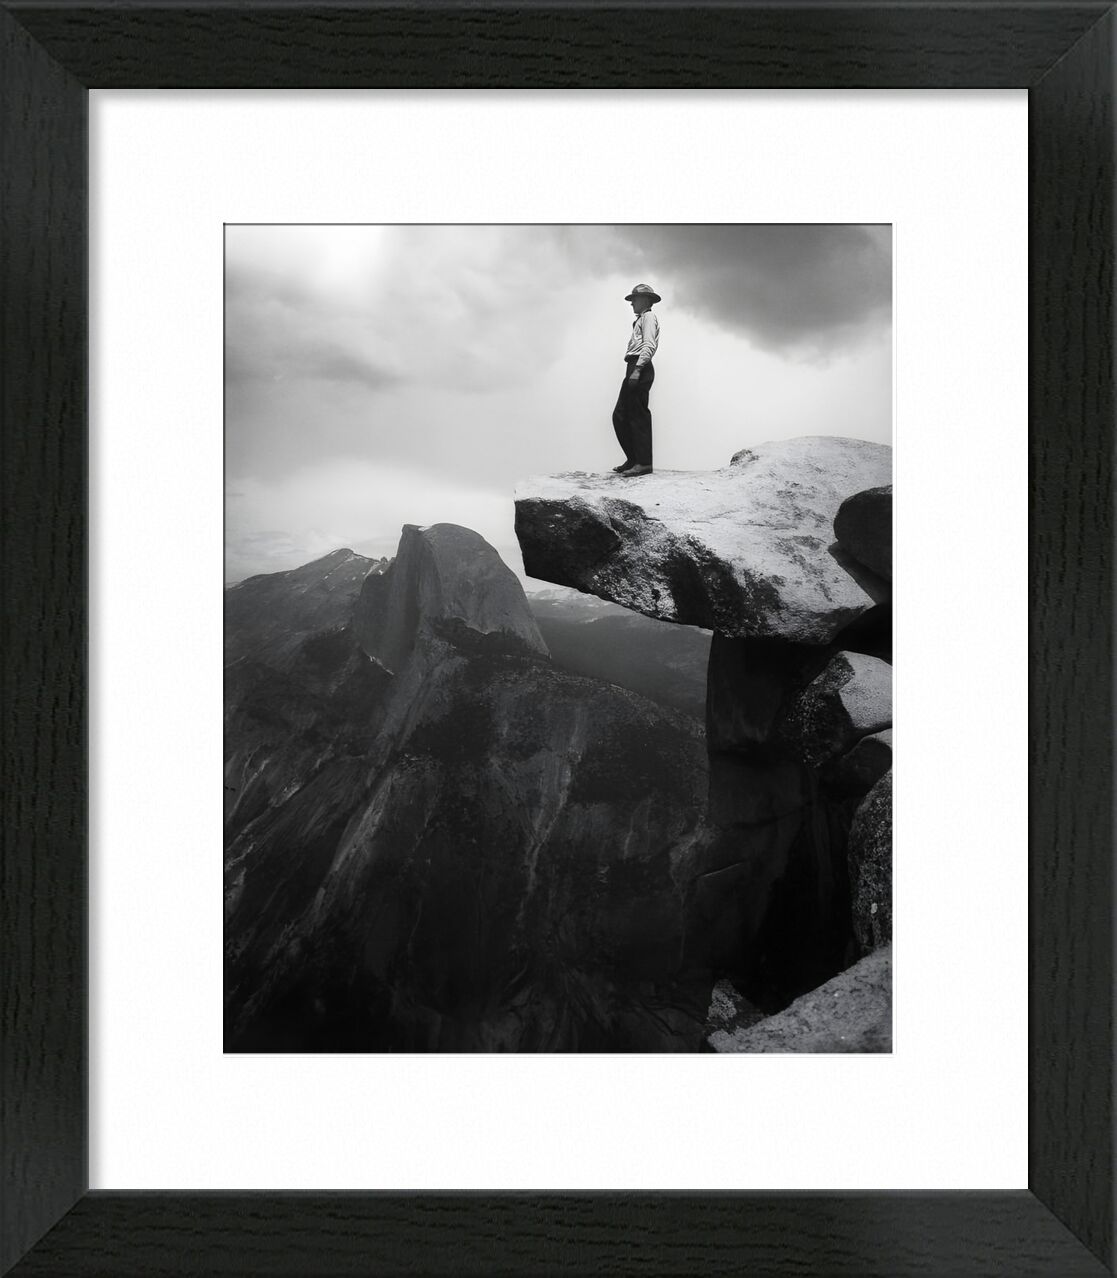 Yosemite, the cowboy - ANSEL ADAMS - 1948 desde Bellas artes, Prodi Art, montañas, nubes, oscuro, blanco y negro, ANSEL ADAMS, vaquero, rock